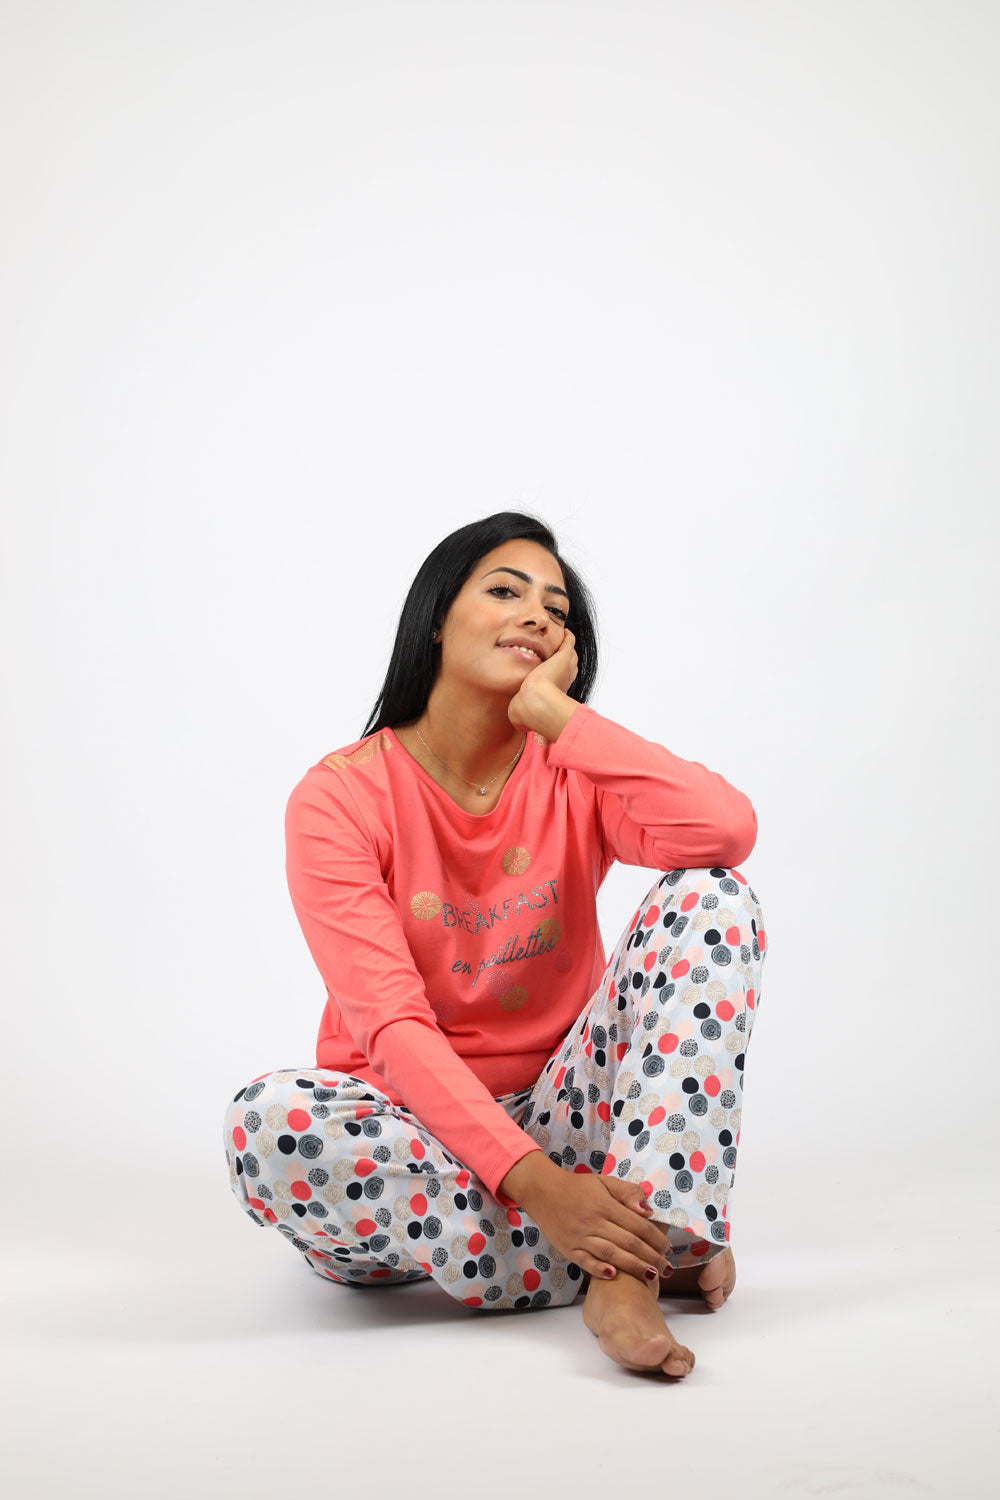 Glamorous Circle Print Pajama Set